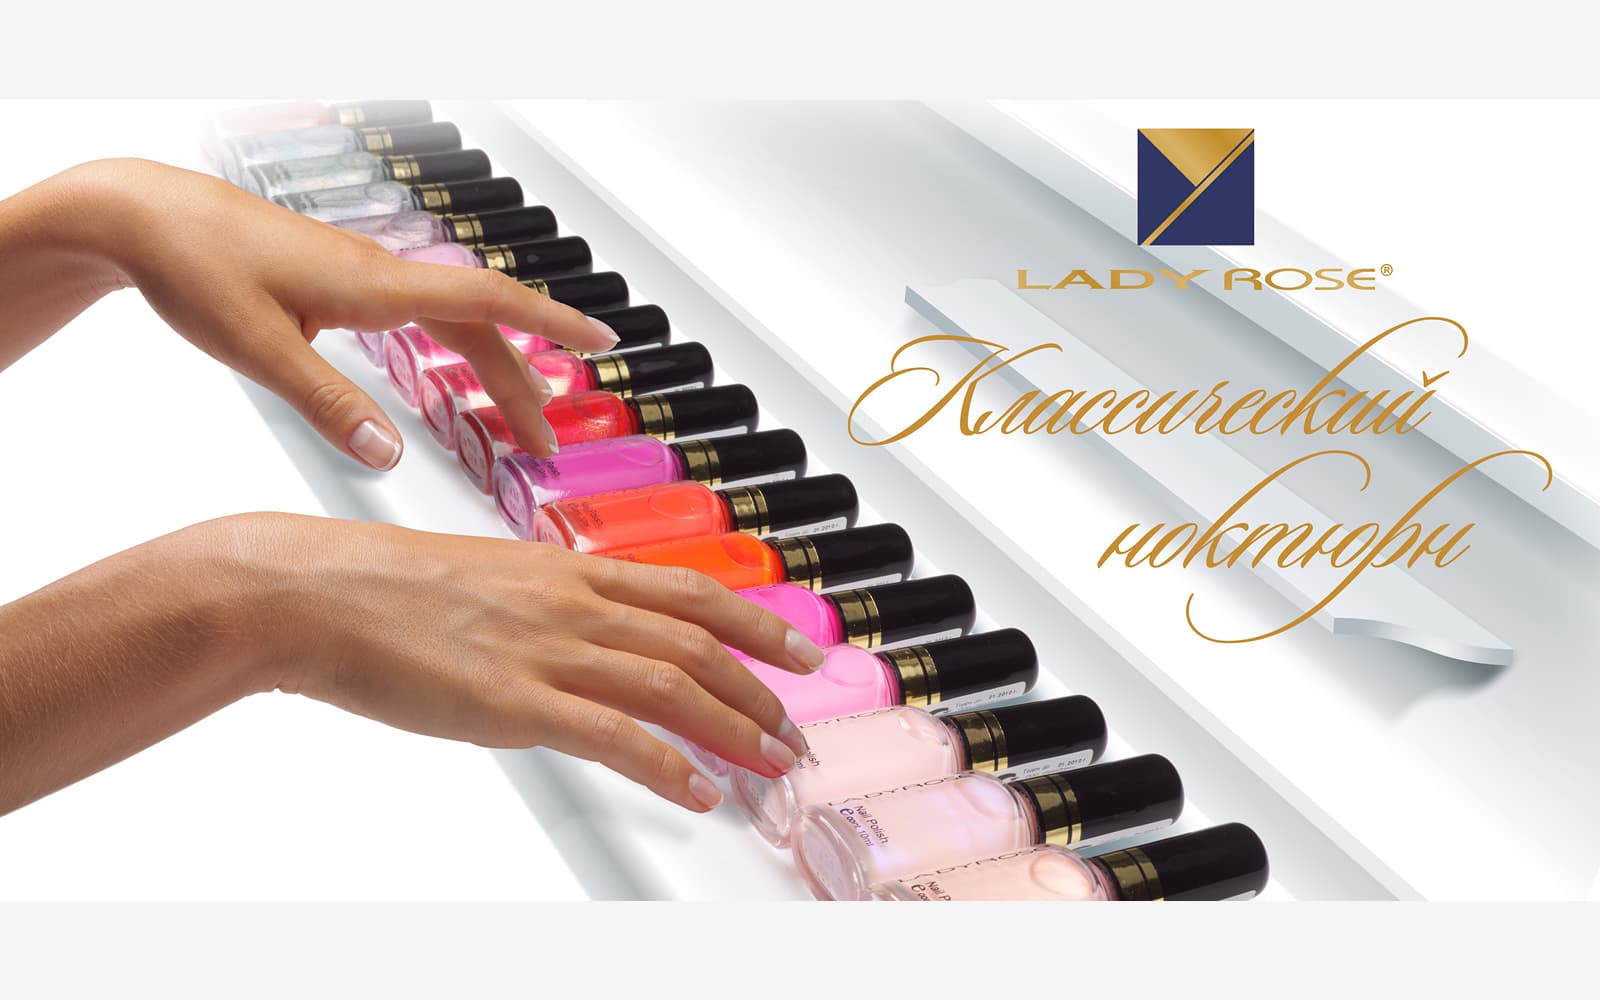 Разработали креативную рекламную концепцию для серии декоративных лаков для ногтей бренда «Lady Rose»